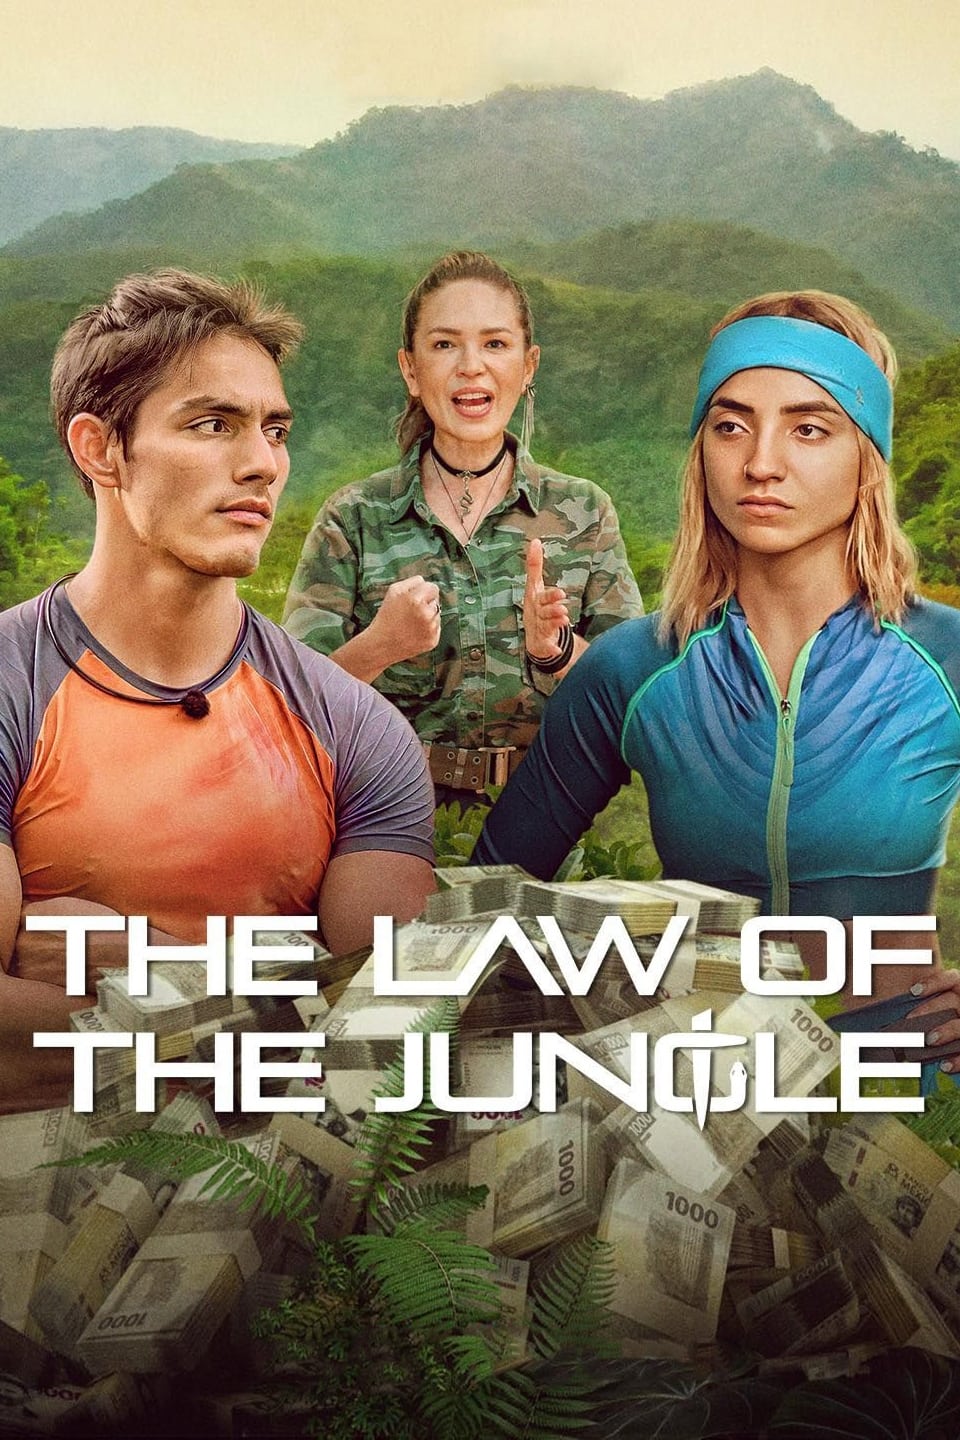 قانون جنگل (The Law of the Jungle)